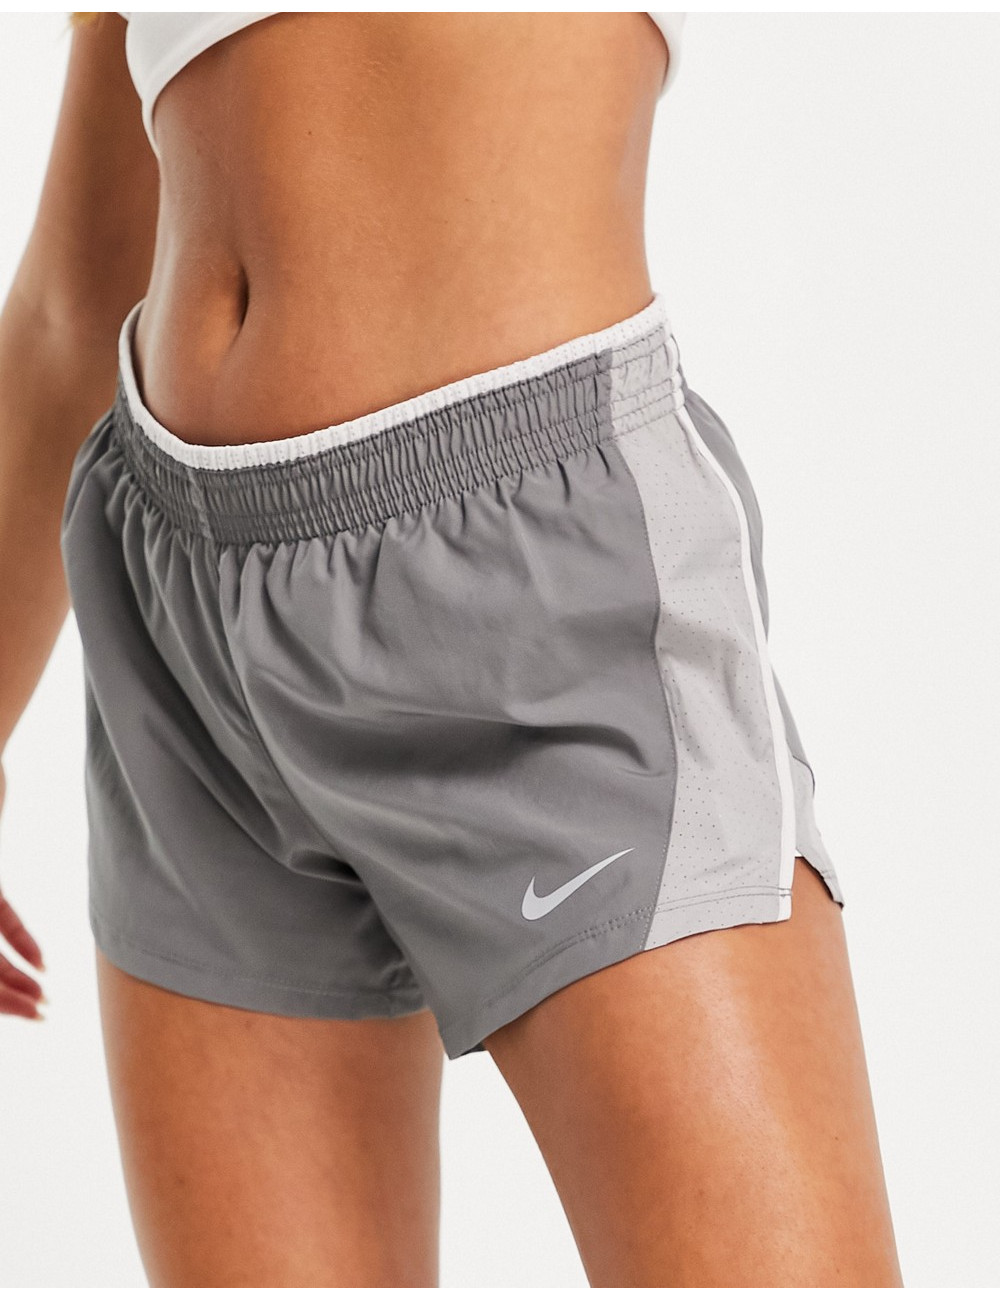 Nike Running 10k short in grey